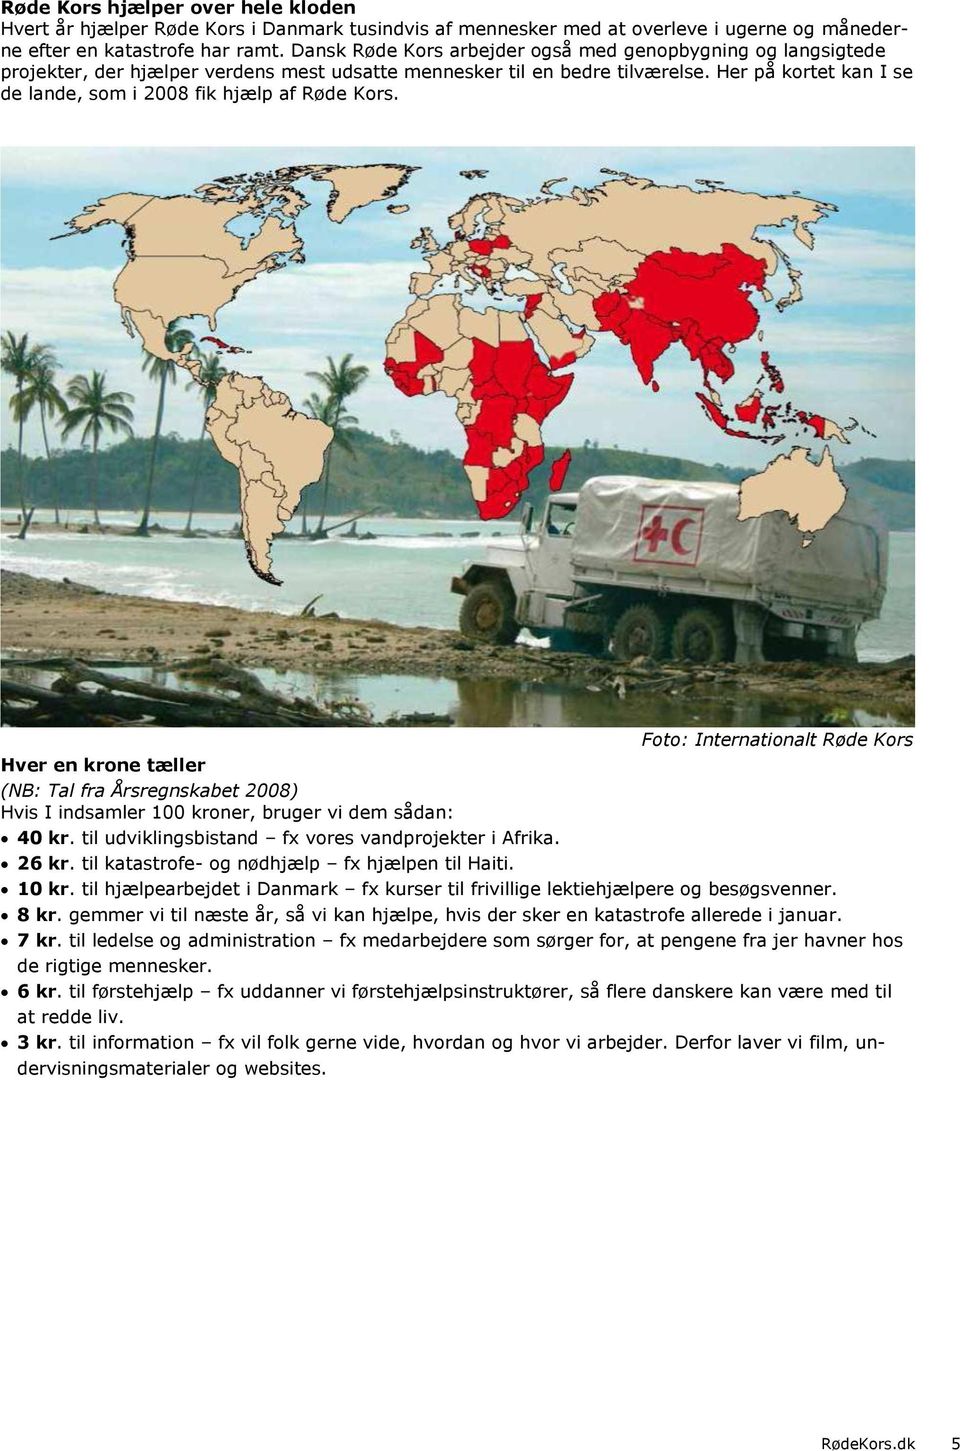 Her på kortet kan I se de lande, som i 2008 fik hjælp af Røde Kors.